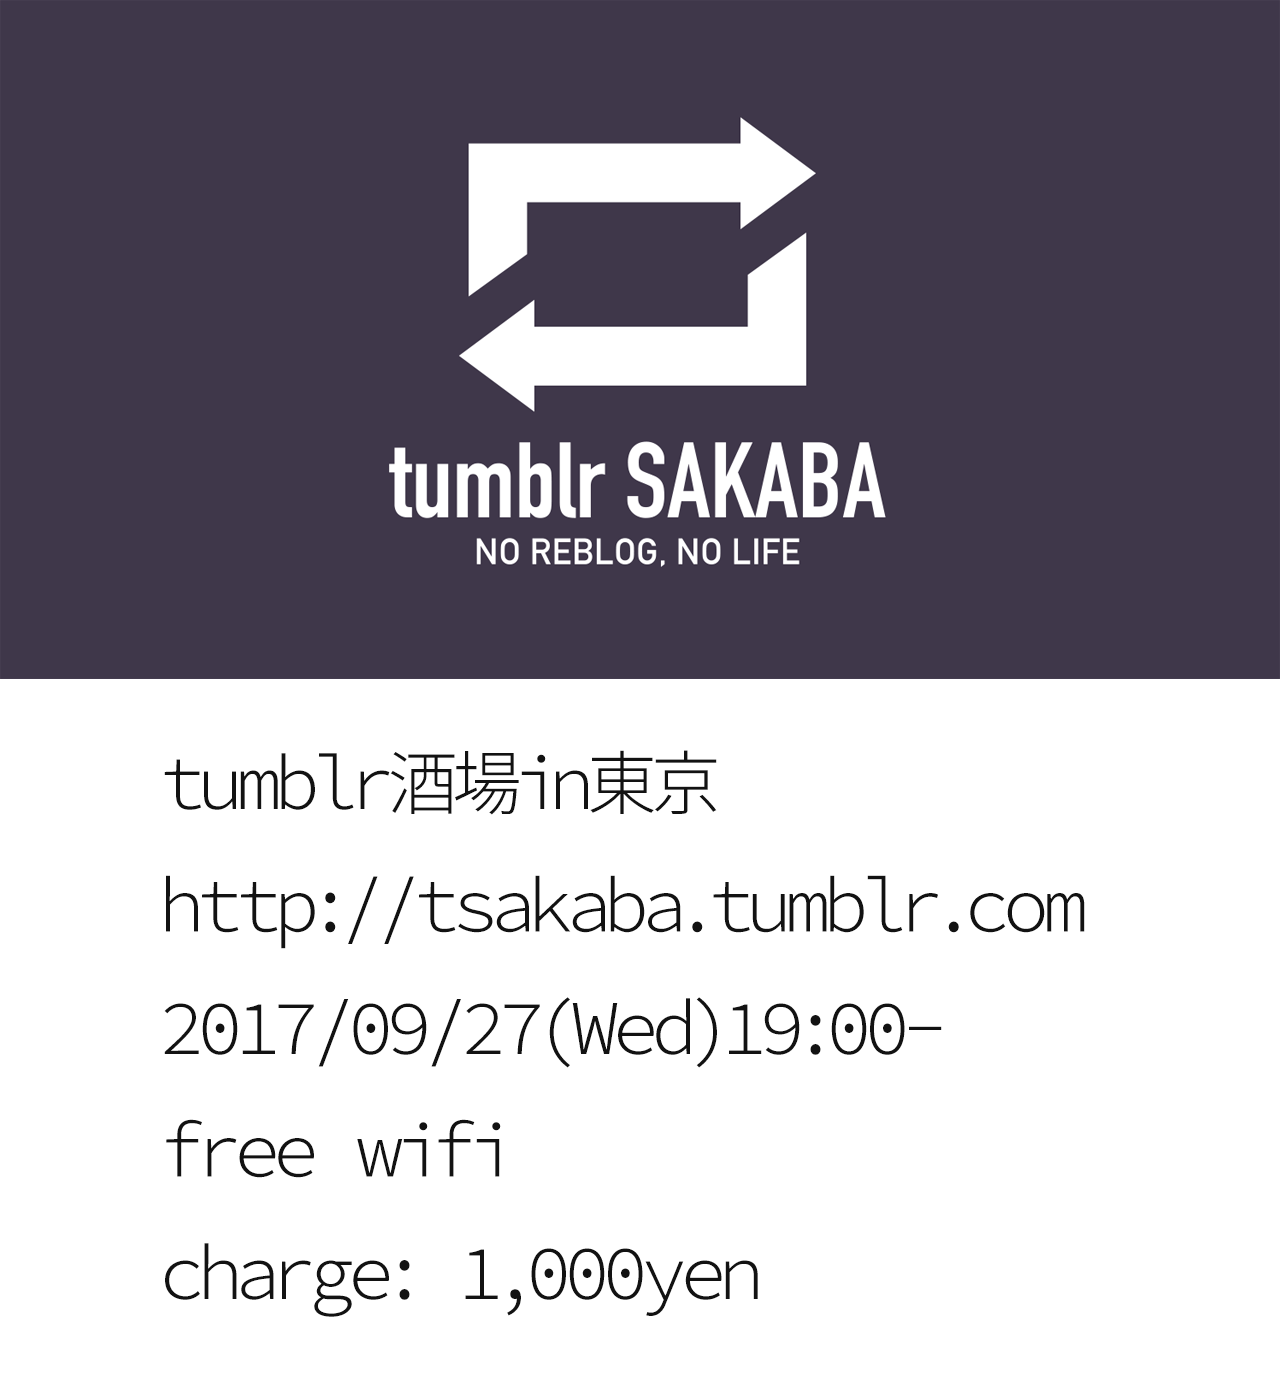 【tumblr酒場 in 東京 2017/09/27(水)】
“ ただひたすらDashboardを潜り、Reblogを繰り返すだけ。そんな、tumblr( http://tumblr.com )というサービスの絶妙なバランスがとても好きです。福岡にtumblrが好きな人が集まる場所を作りたくて始めました。
屋号は「tumblr酒場」。
http://tsakaba.tumblr.com より
”
福岡で開催しているtumblr酒場を東京でも！ということで、場所は早稲田にある【音楽喫茶...